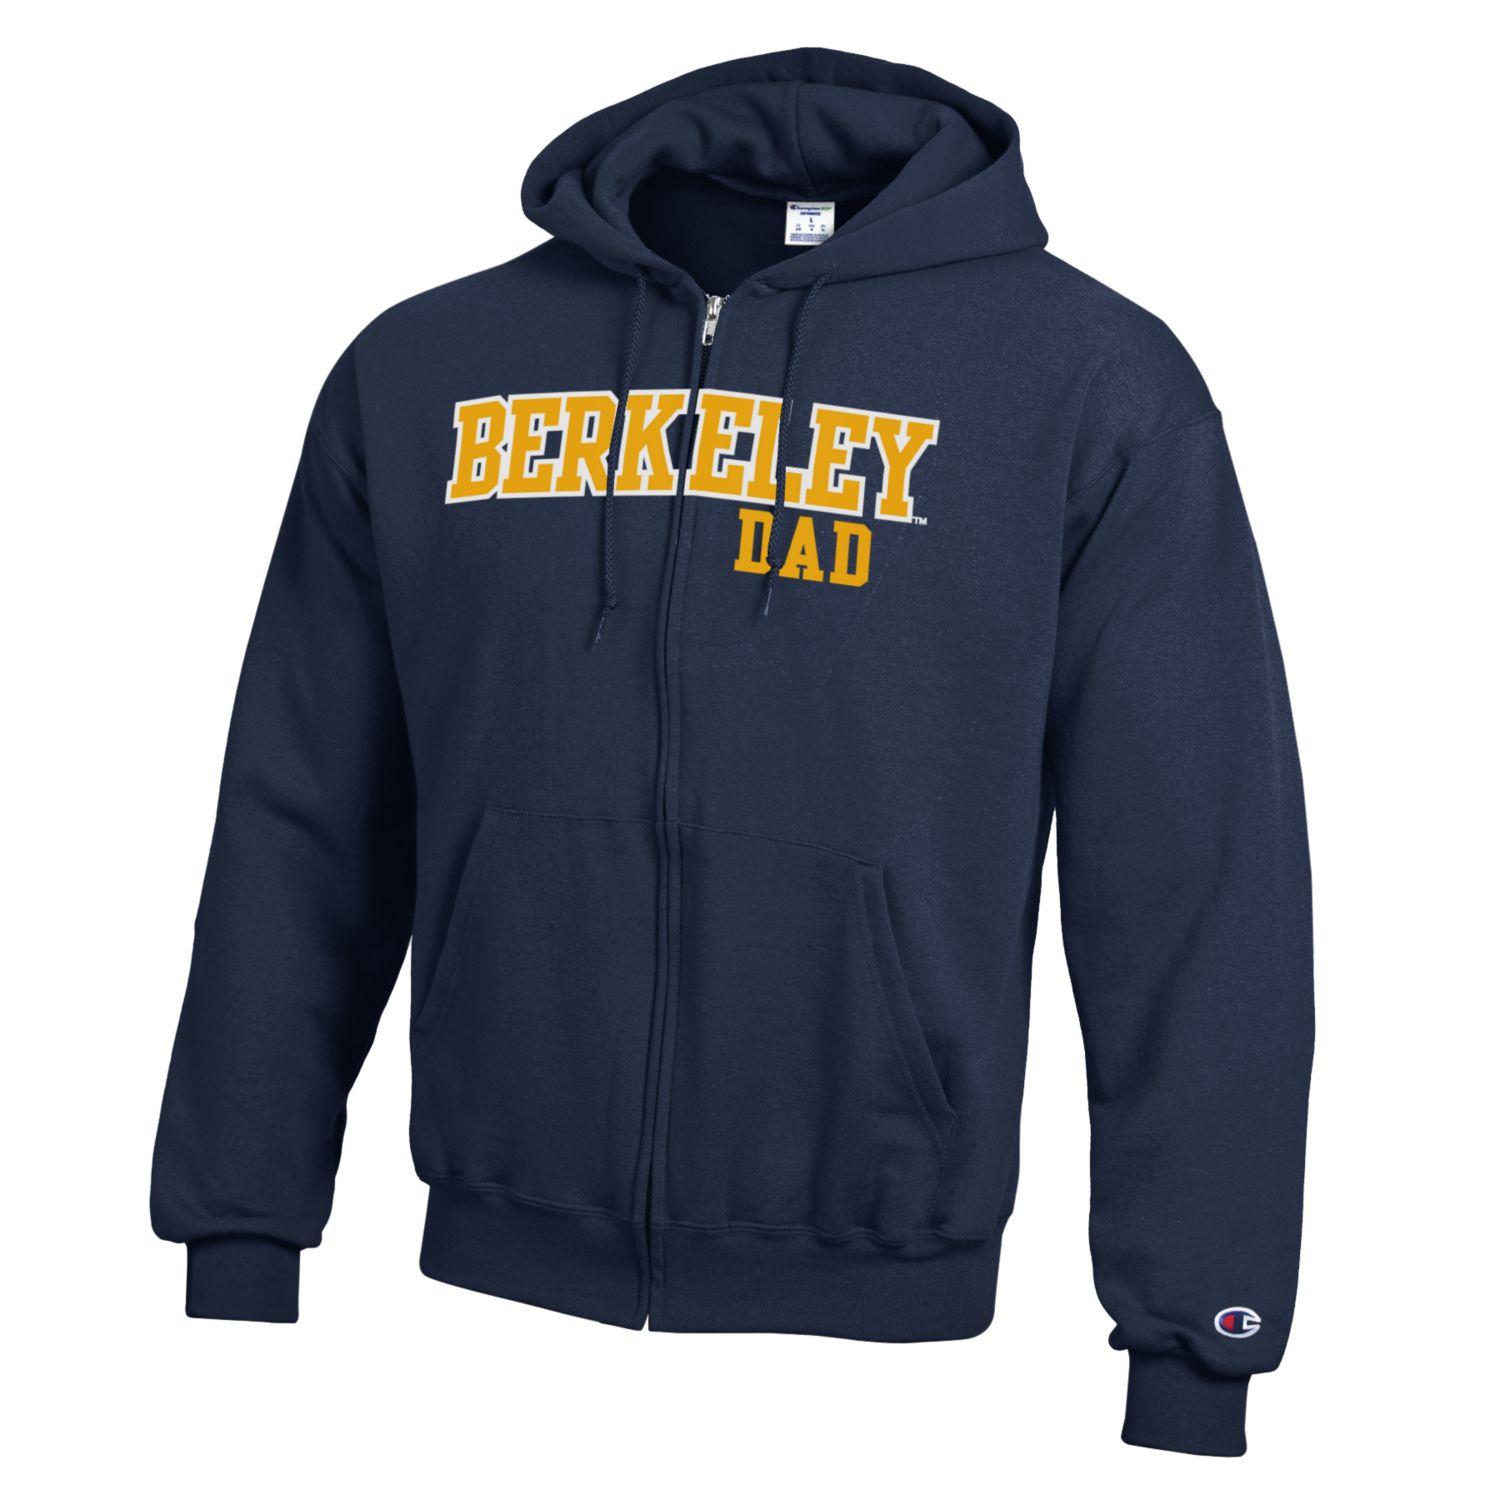 U.C. Berkeley Dad applique zip-up hoodie sweatshirt-Navy-Shop College Wear